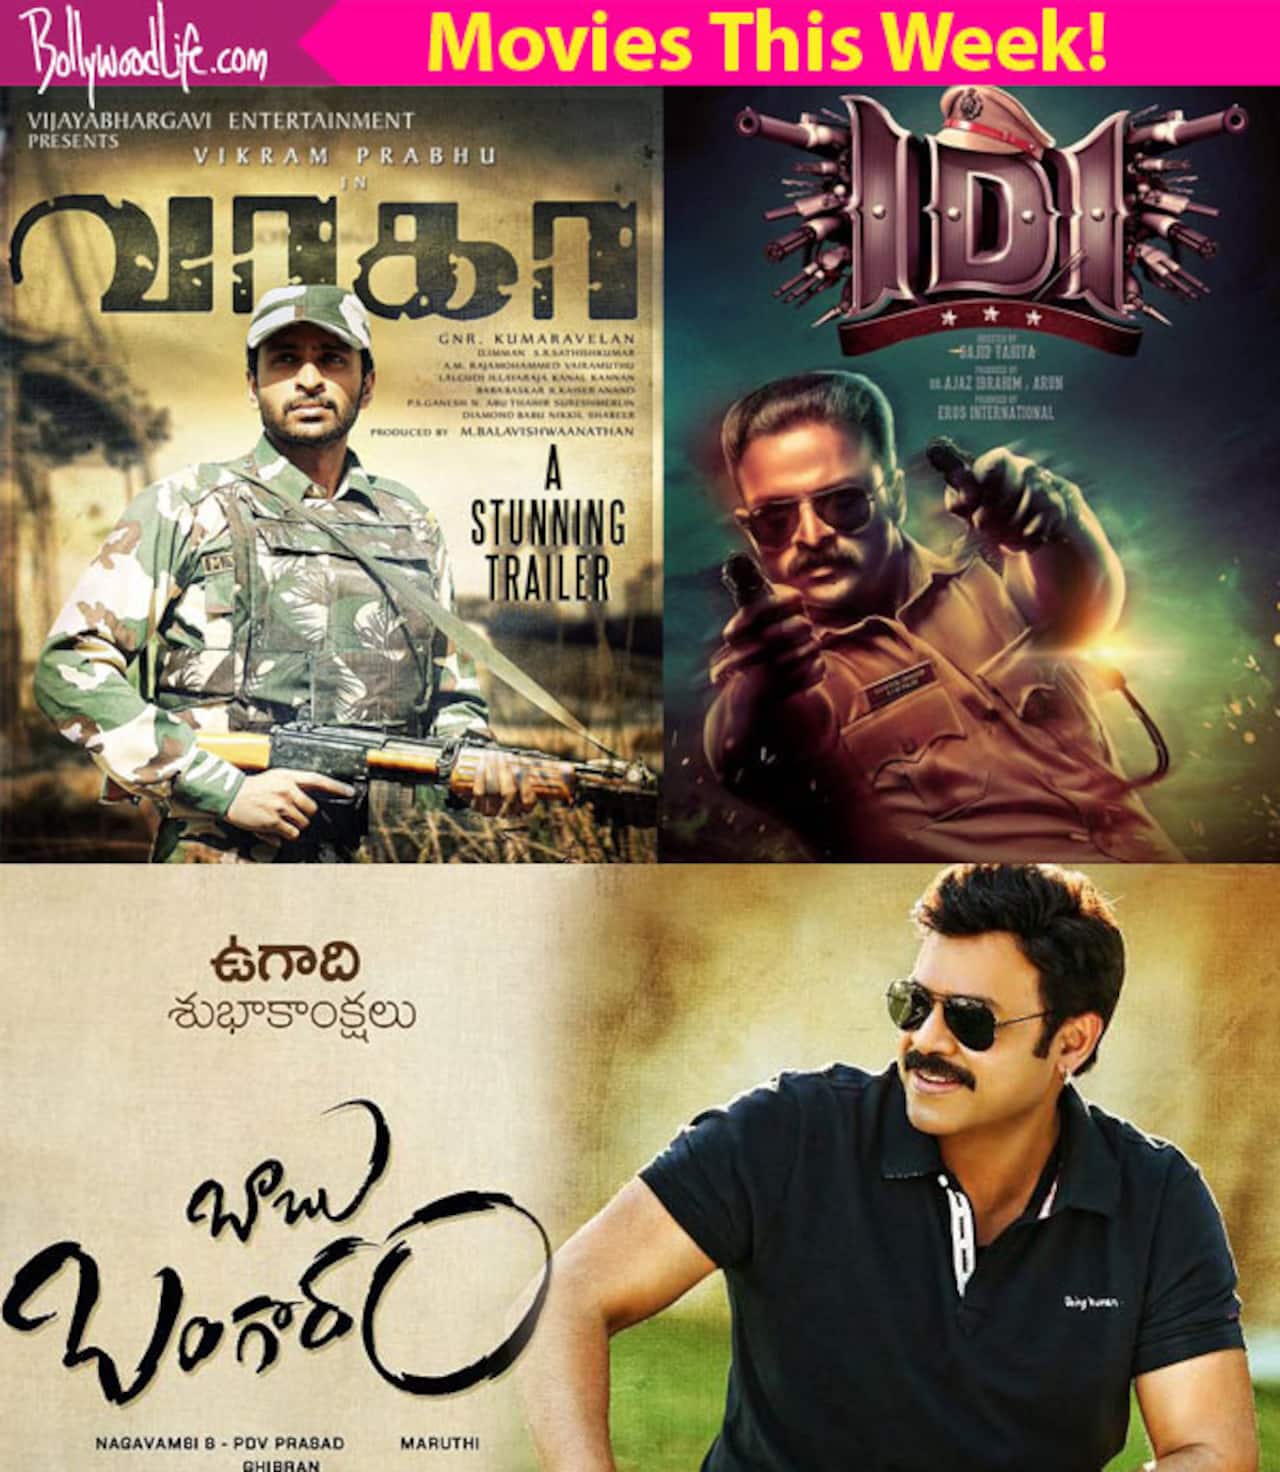 South movies this week: IDI, Babu Bangaram, Joker, Wagah, Pretham, Mudinja Ivana Pudi